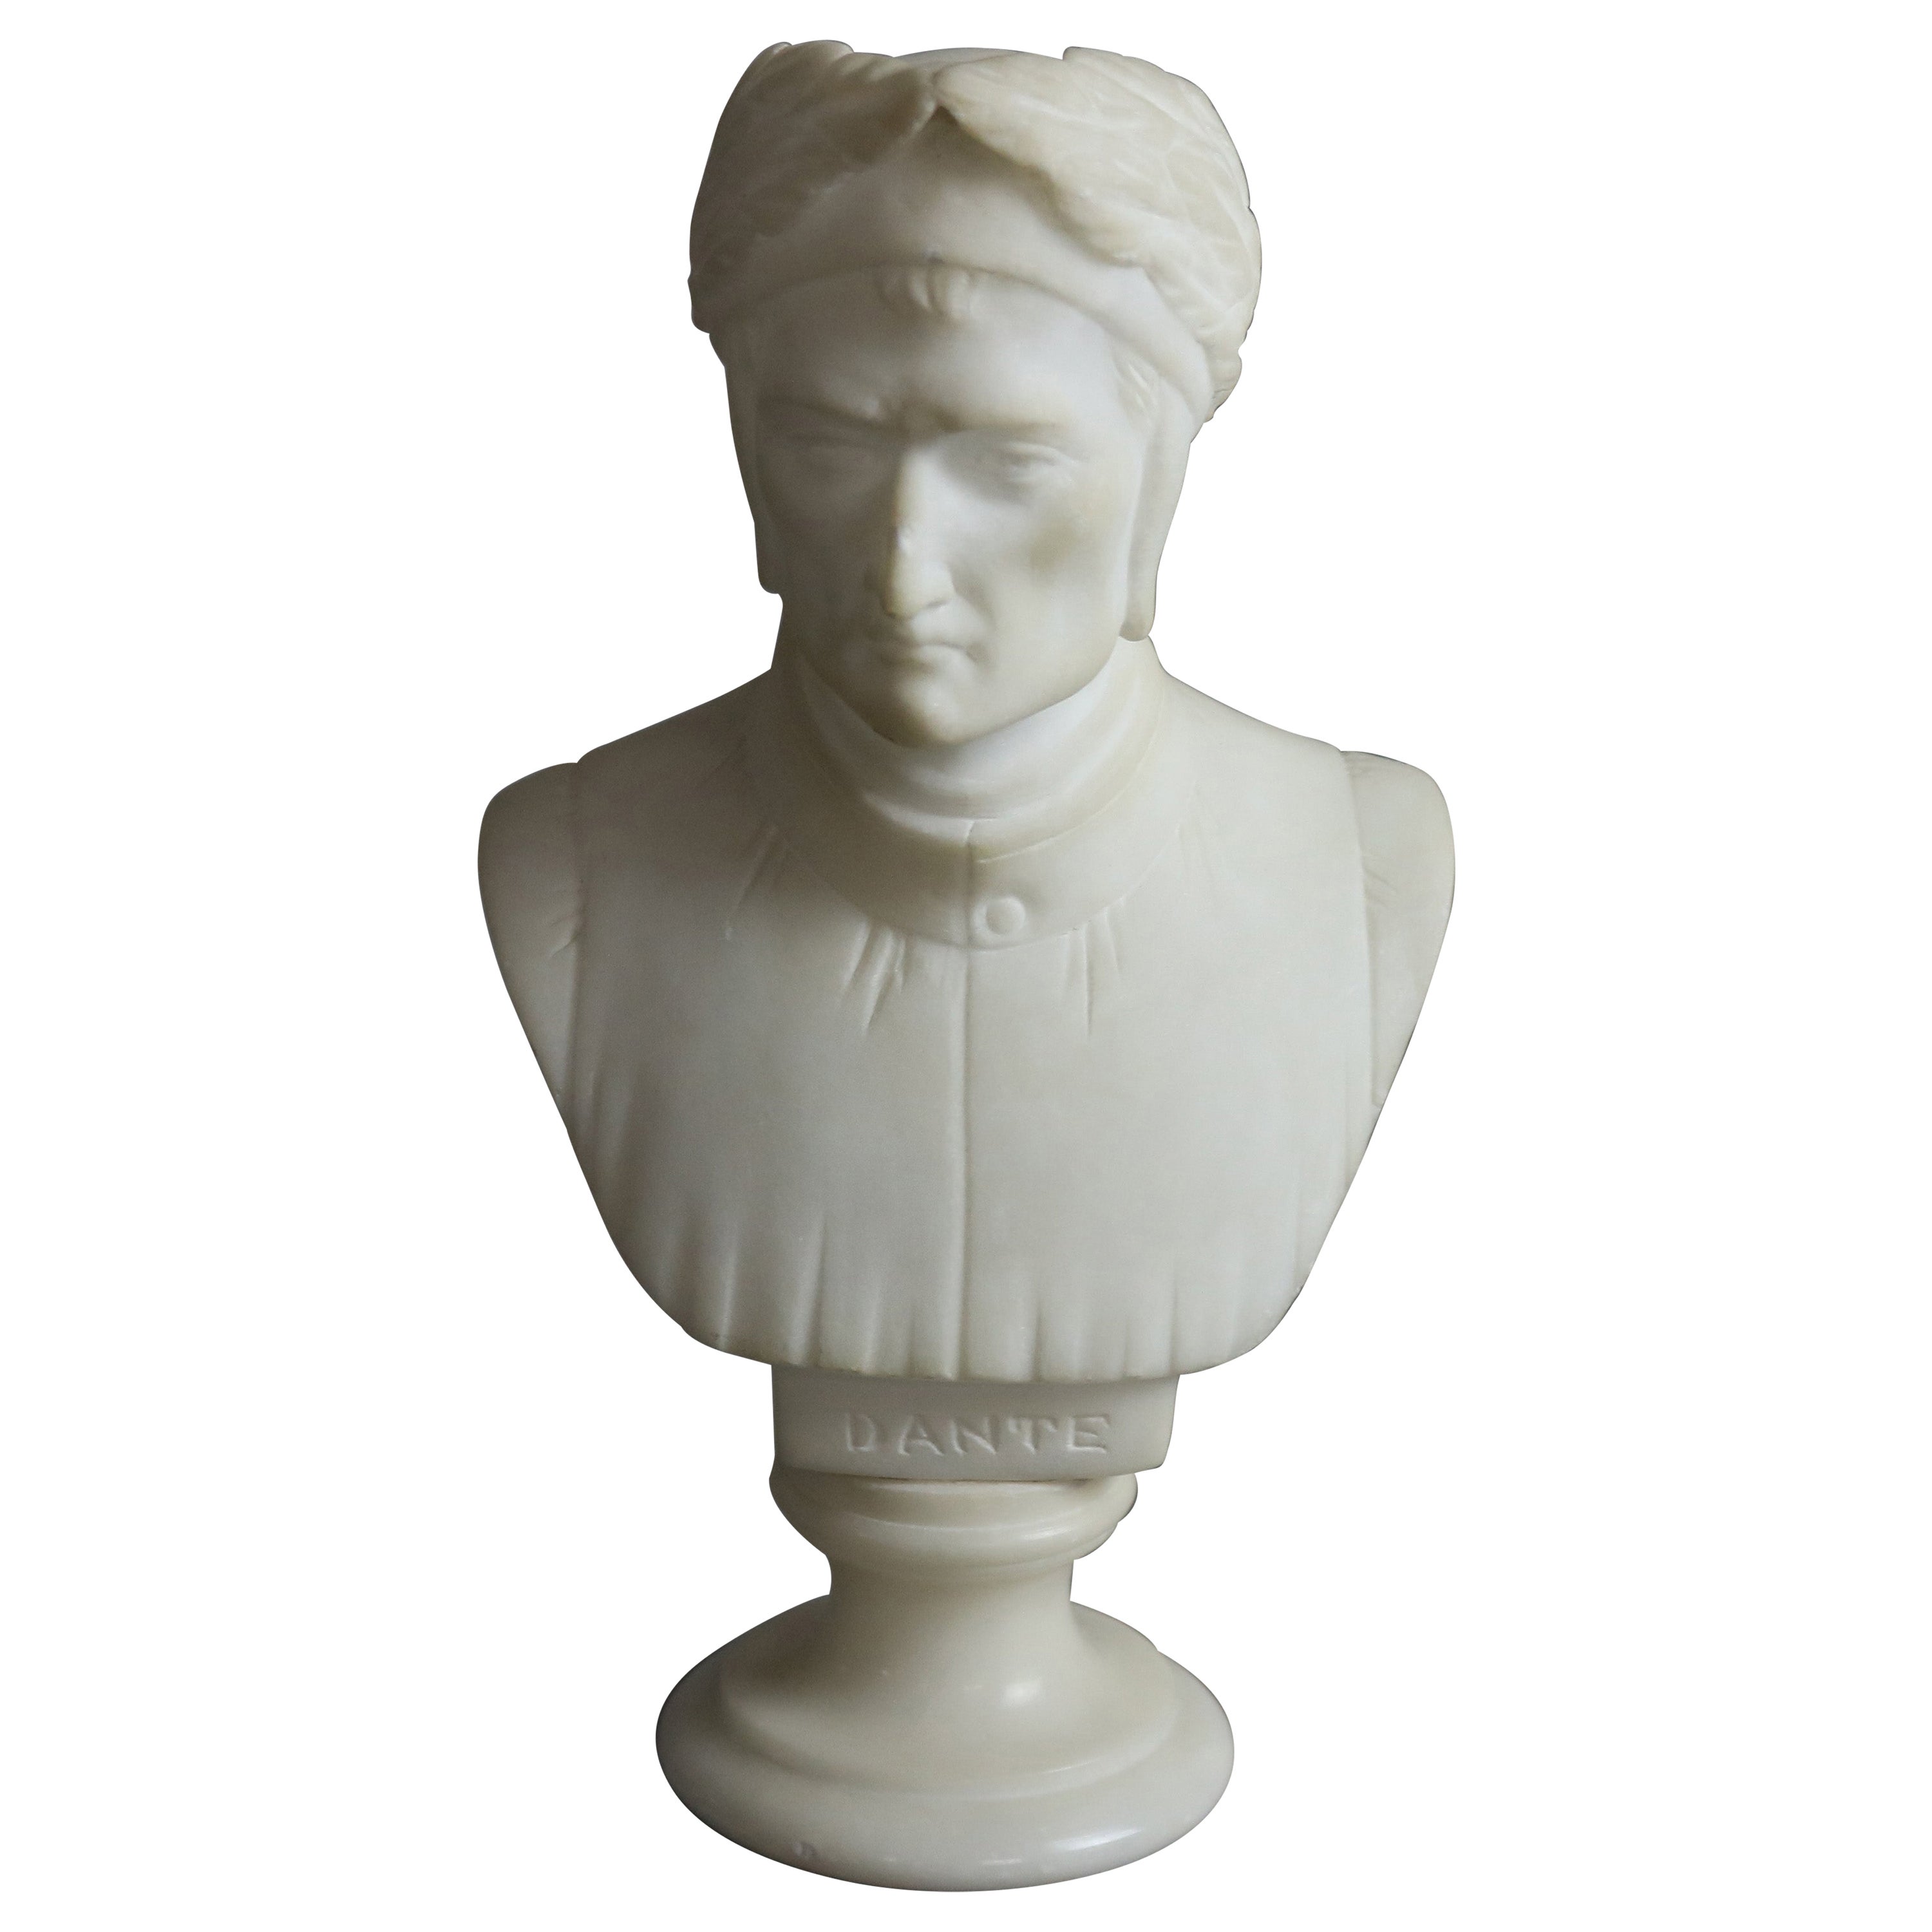 Antique Italian Carved Marble Bust Sculpture of Dante Alighieri, C 1890